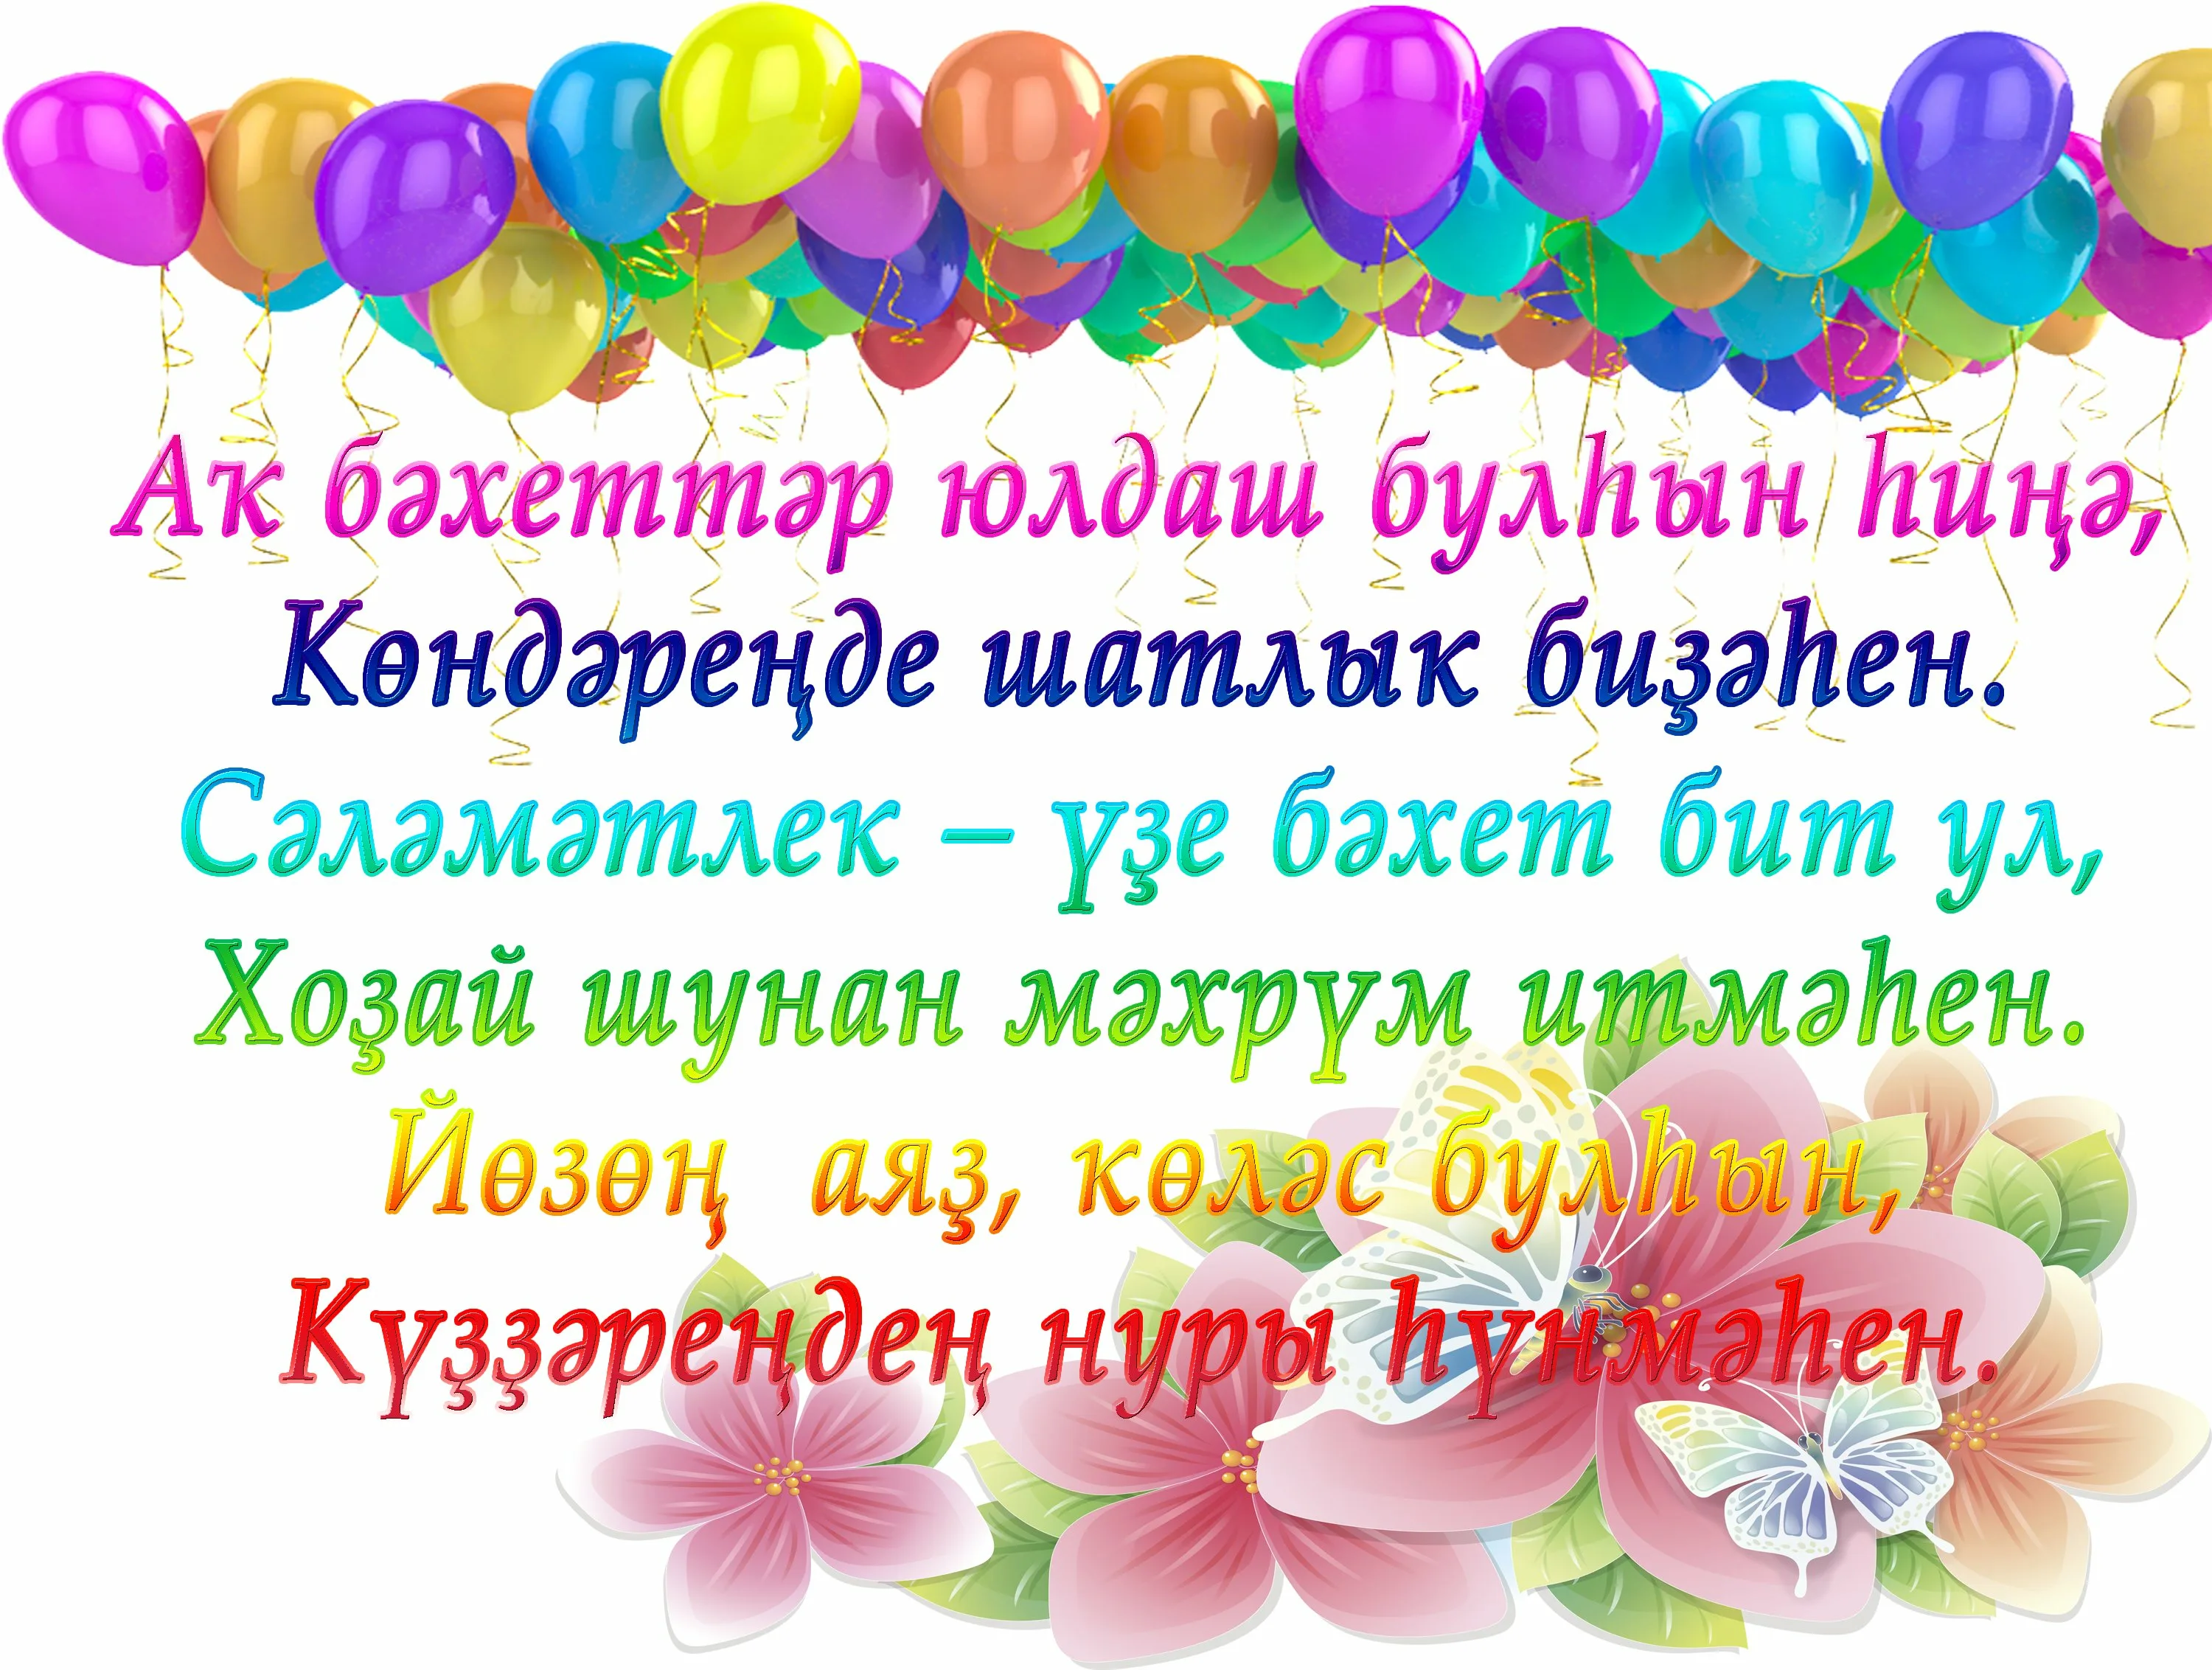 Поздравление с днем рождения на таджикском языке. Поздравления с днём рождения на башкирском. Поздравления с днём рождения на башкирском языке. Поздравления с днём на башкирском языке. Поздравление с юбилеем на башкирском языке.